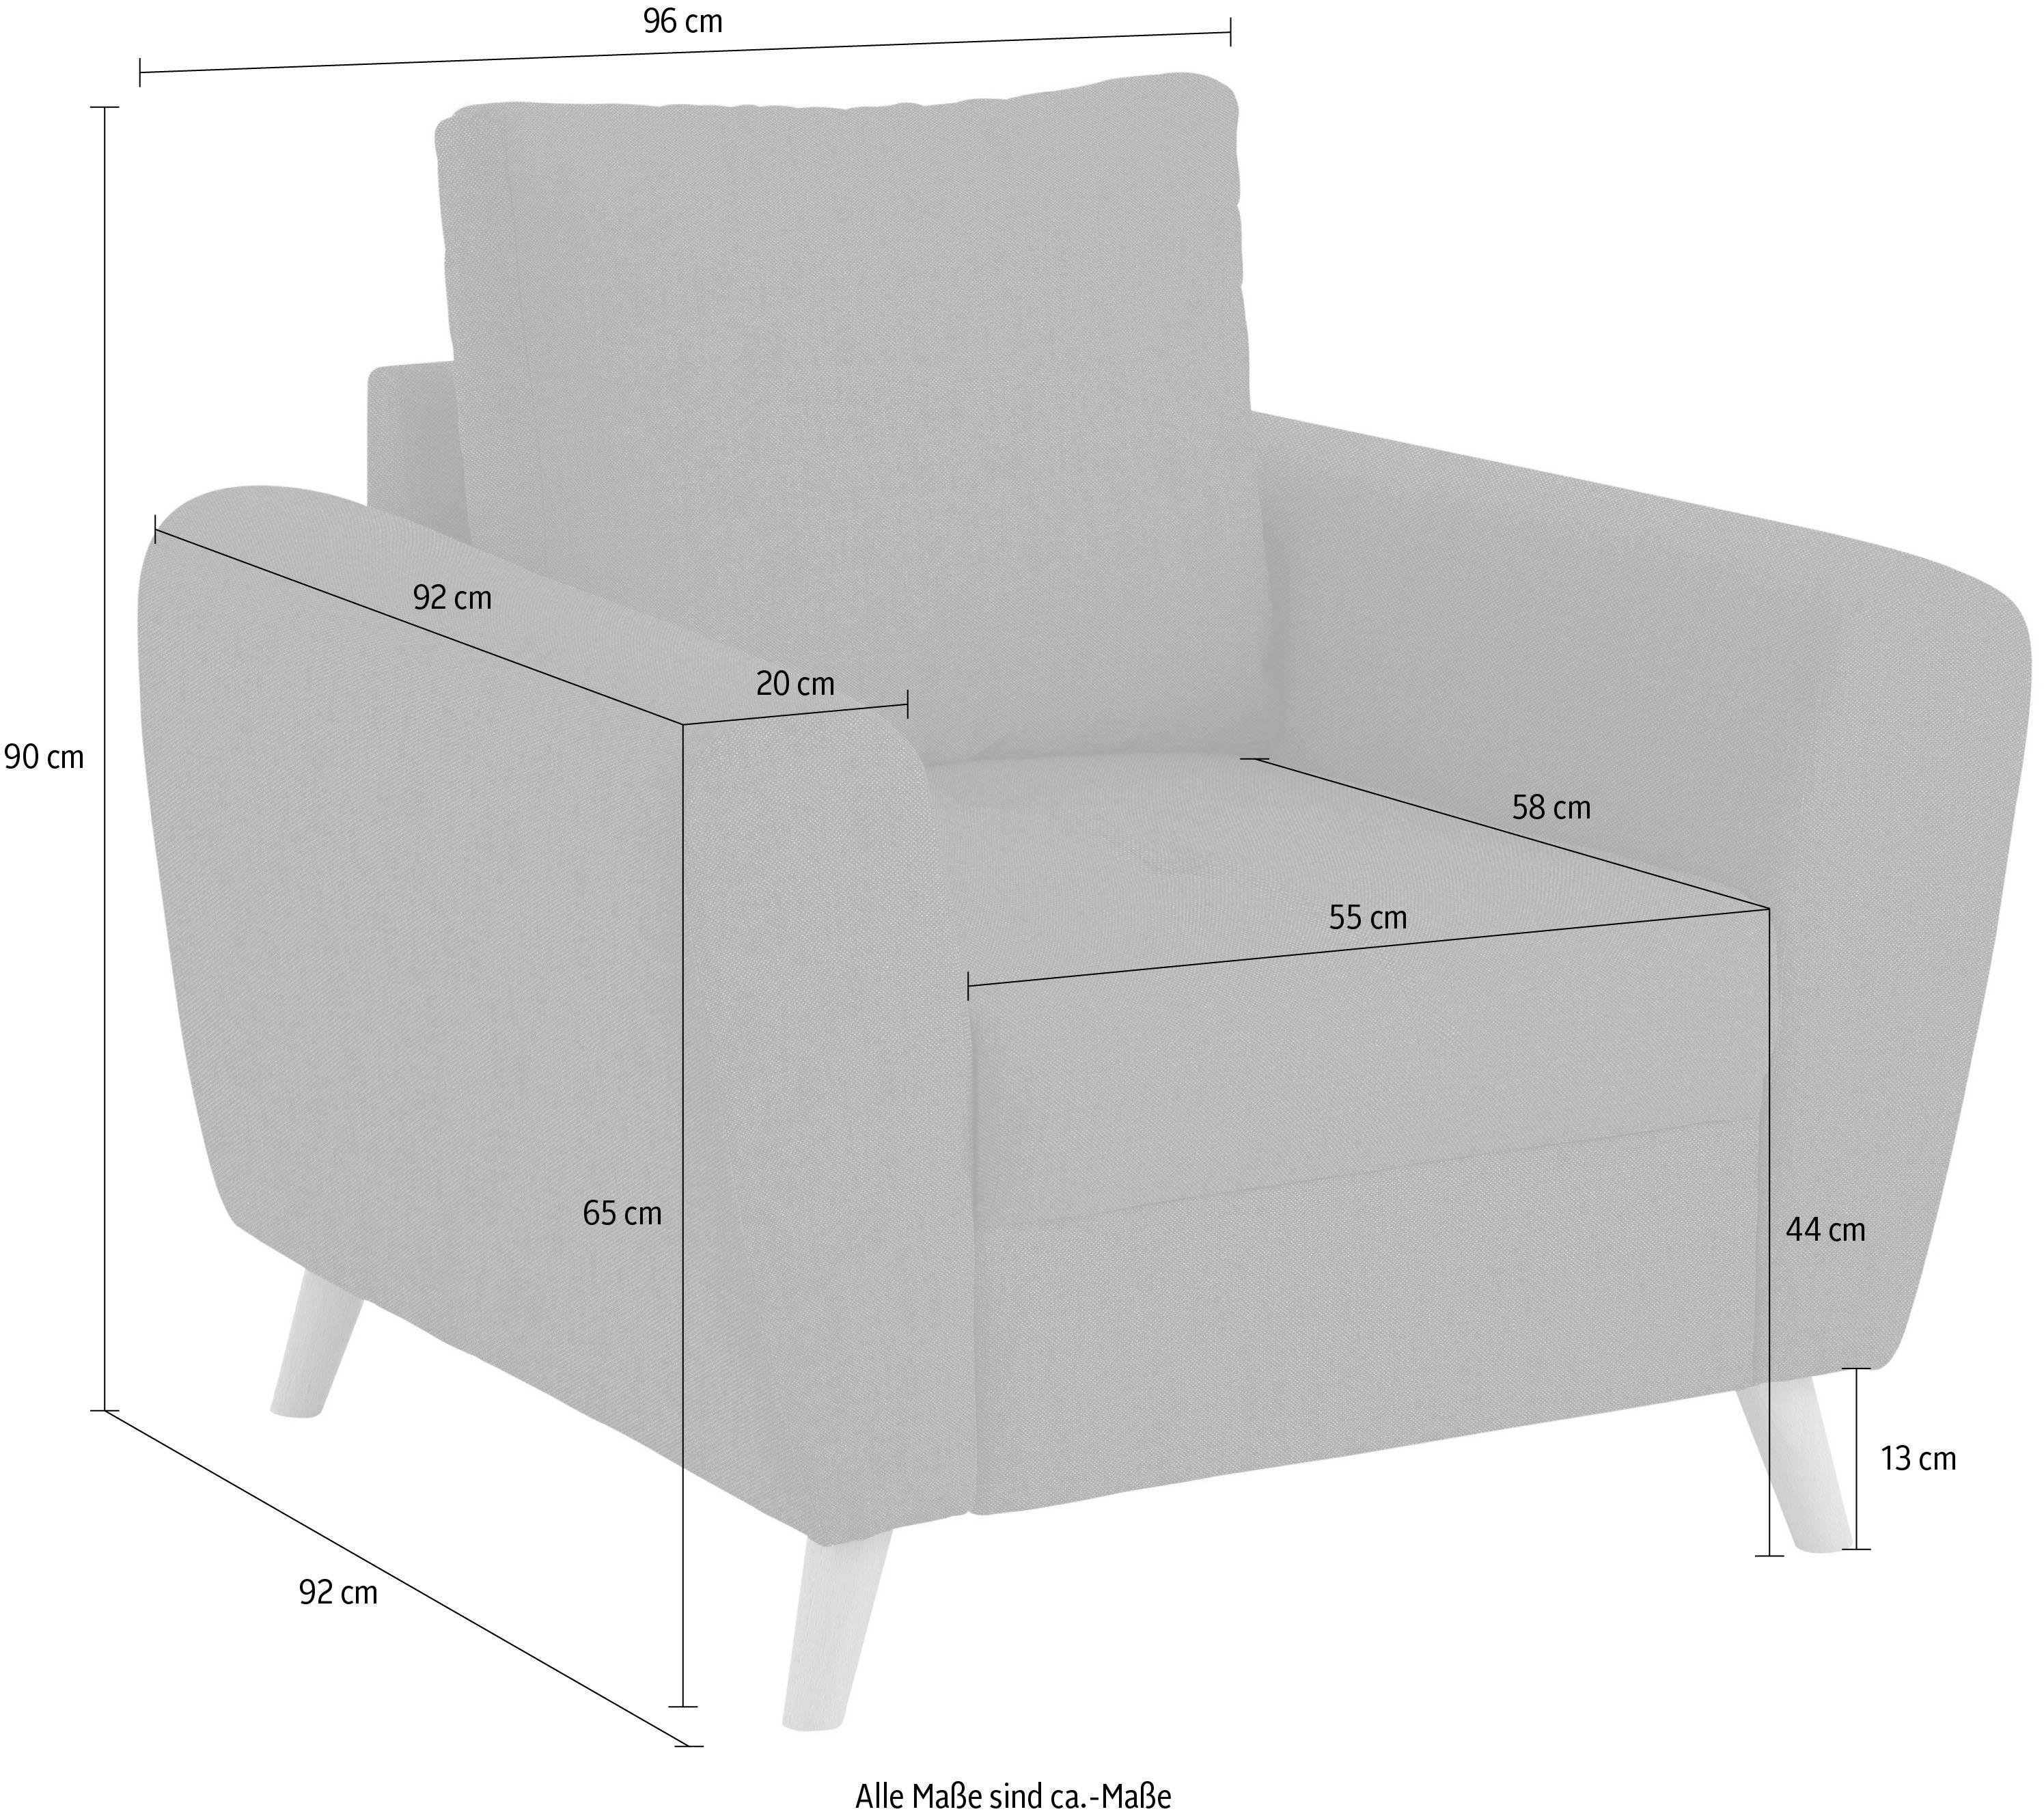 Home affaire Sessel Penelope Luxus, mit besonders hochwertiger Polsterung für bis zu 140 kg pro Sitzfläche